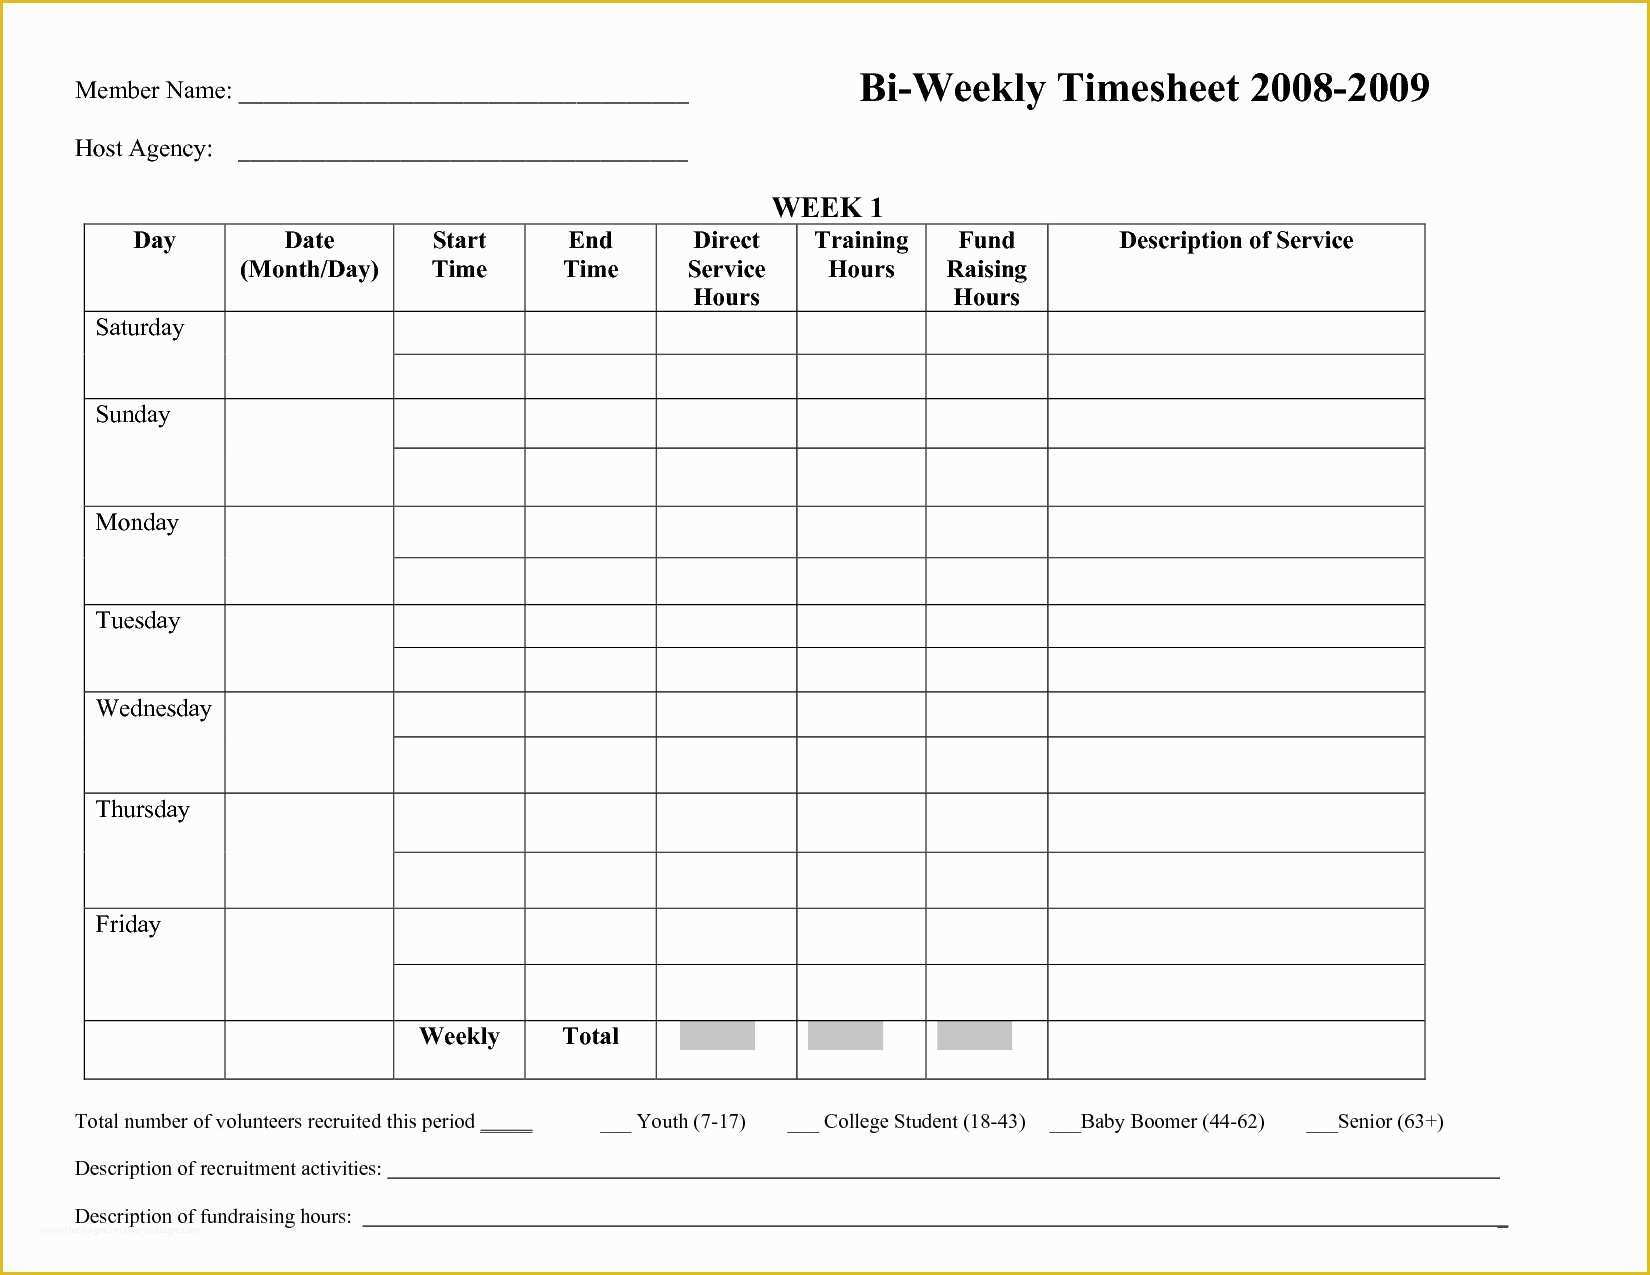 employee bi weekly timesheet